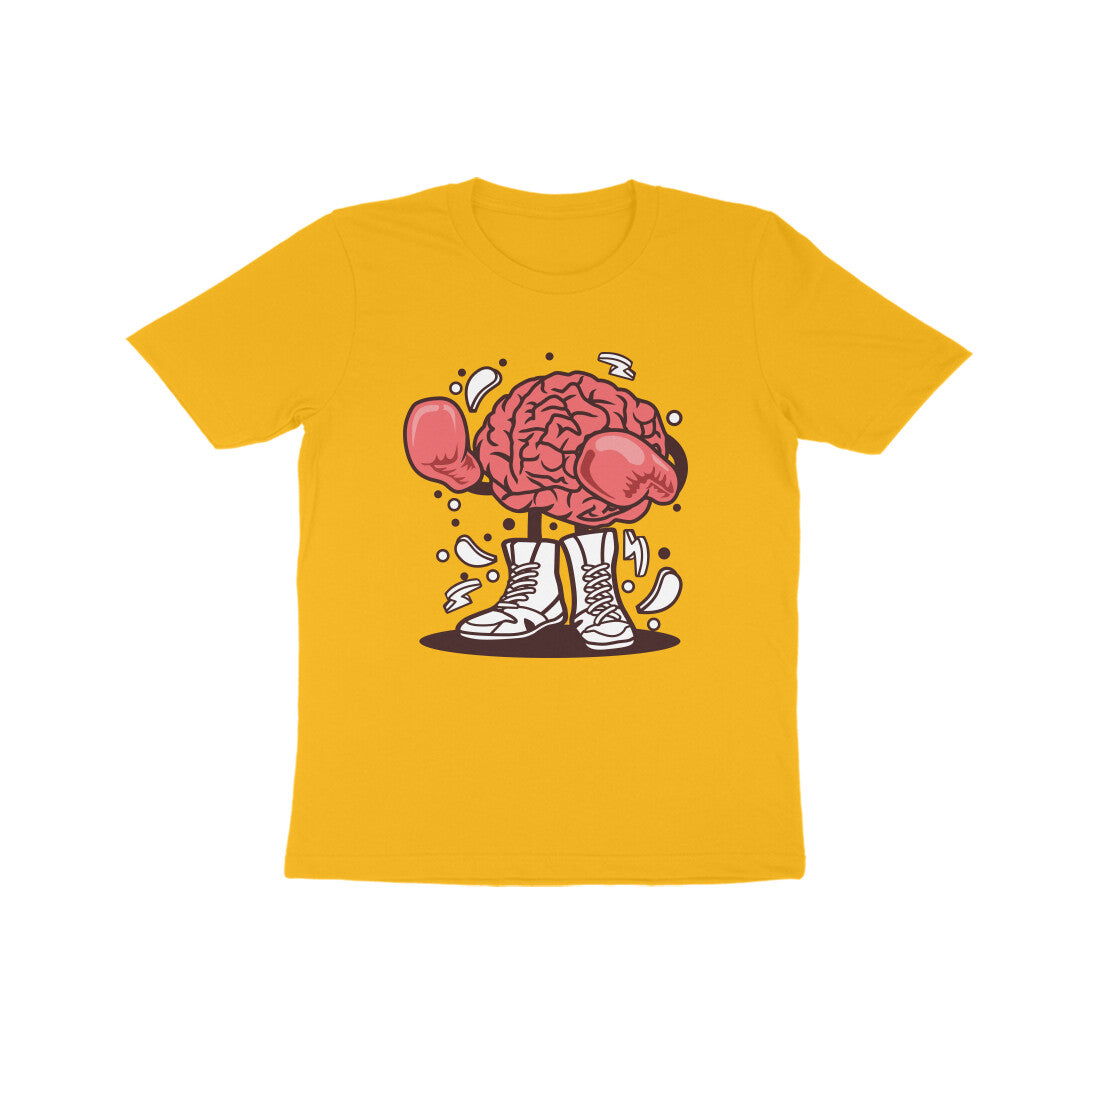 Kids' Half Sleeve Round Neck T-shirt – Brain Fight 1